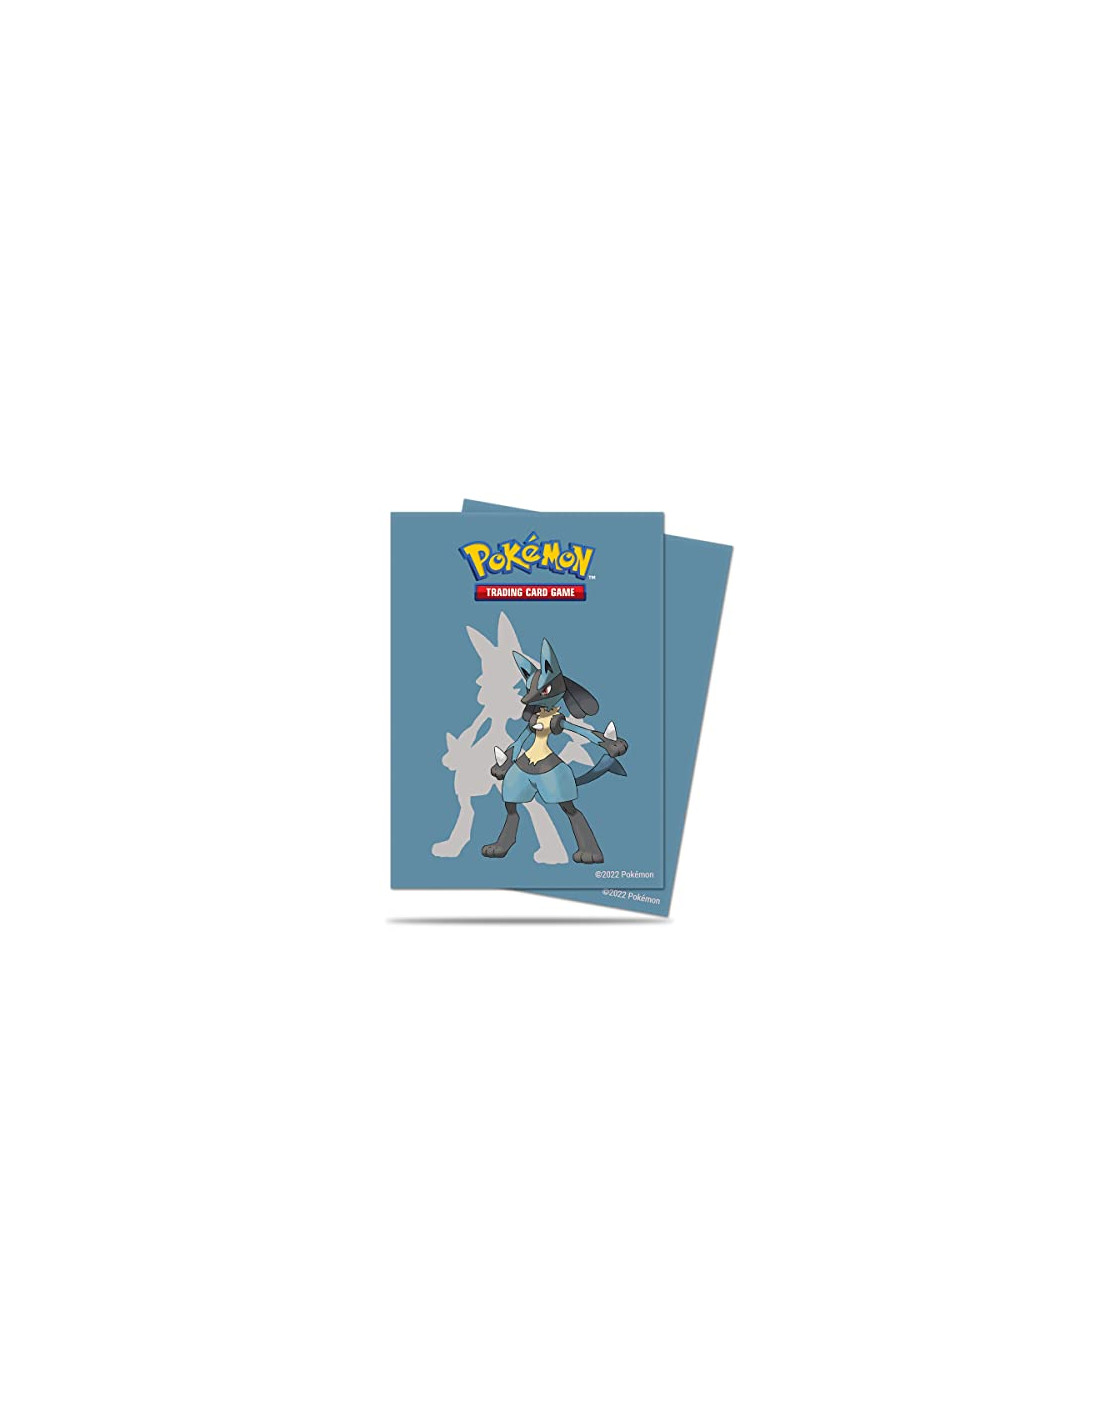 65 Pochettes de protection pour cartes Pokémon avec Lucario par UltraPro